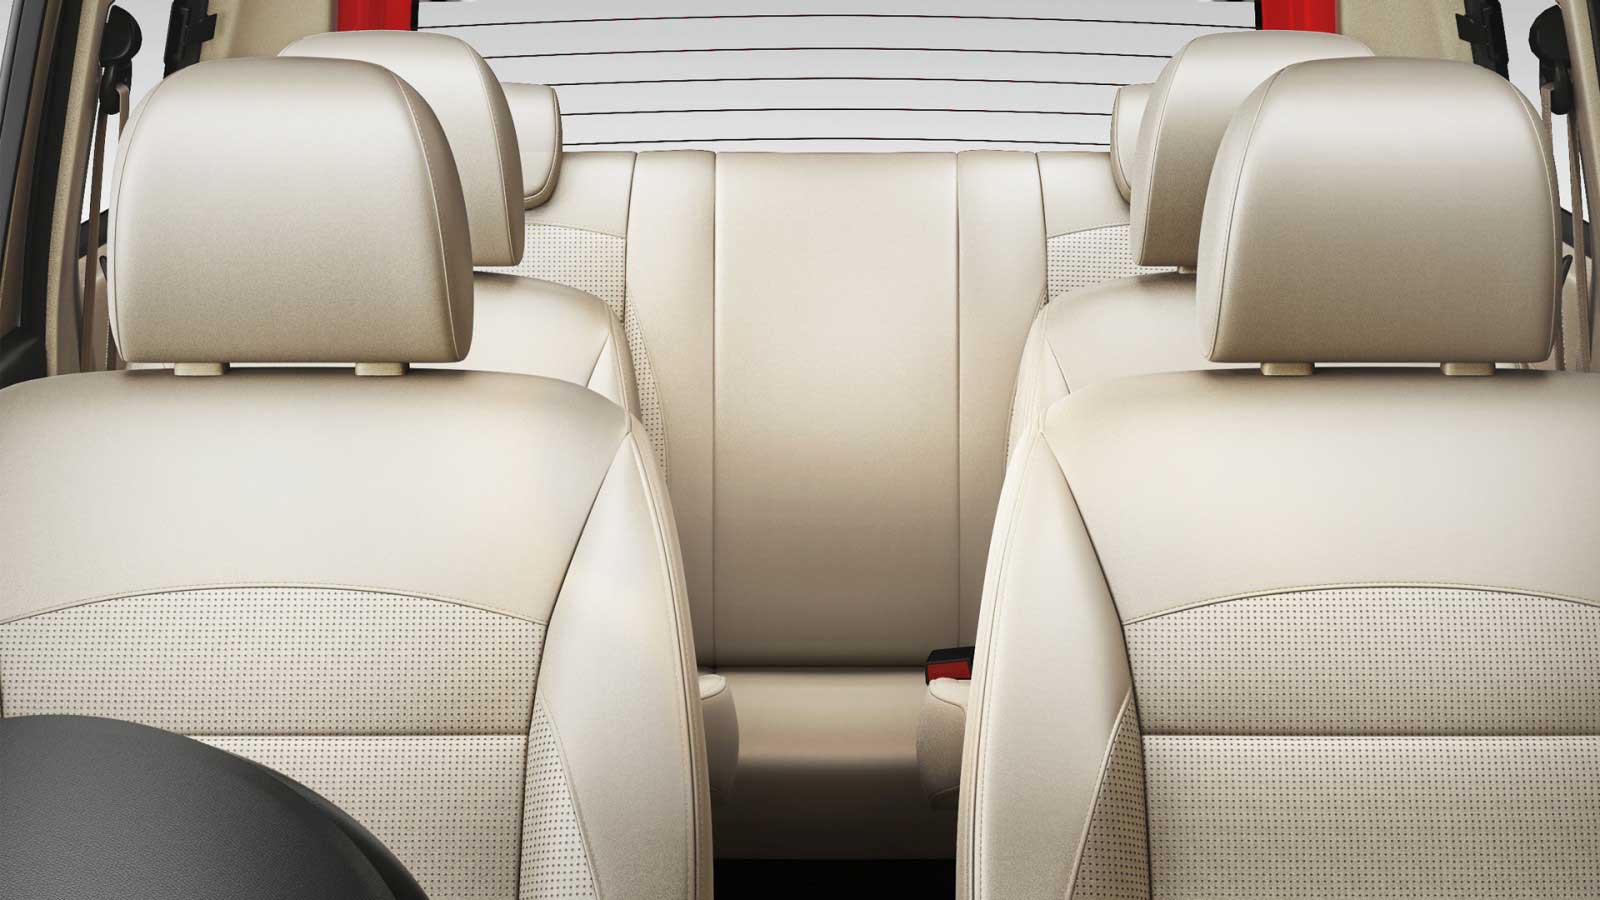 Chevrolet Enjoy 1.3 TCDi LTZ 8 STR Interior seats